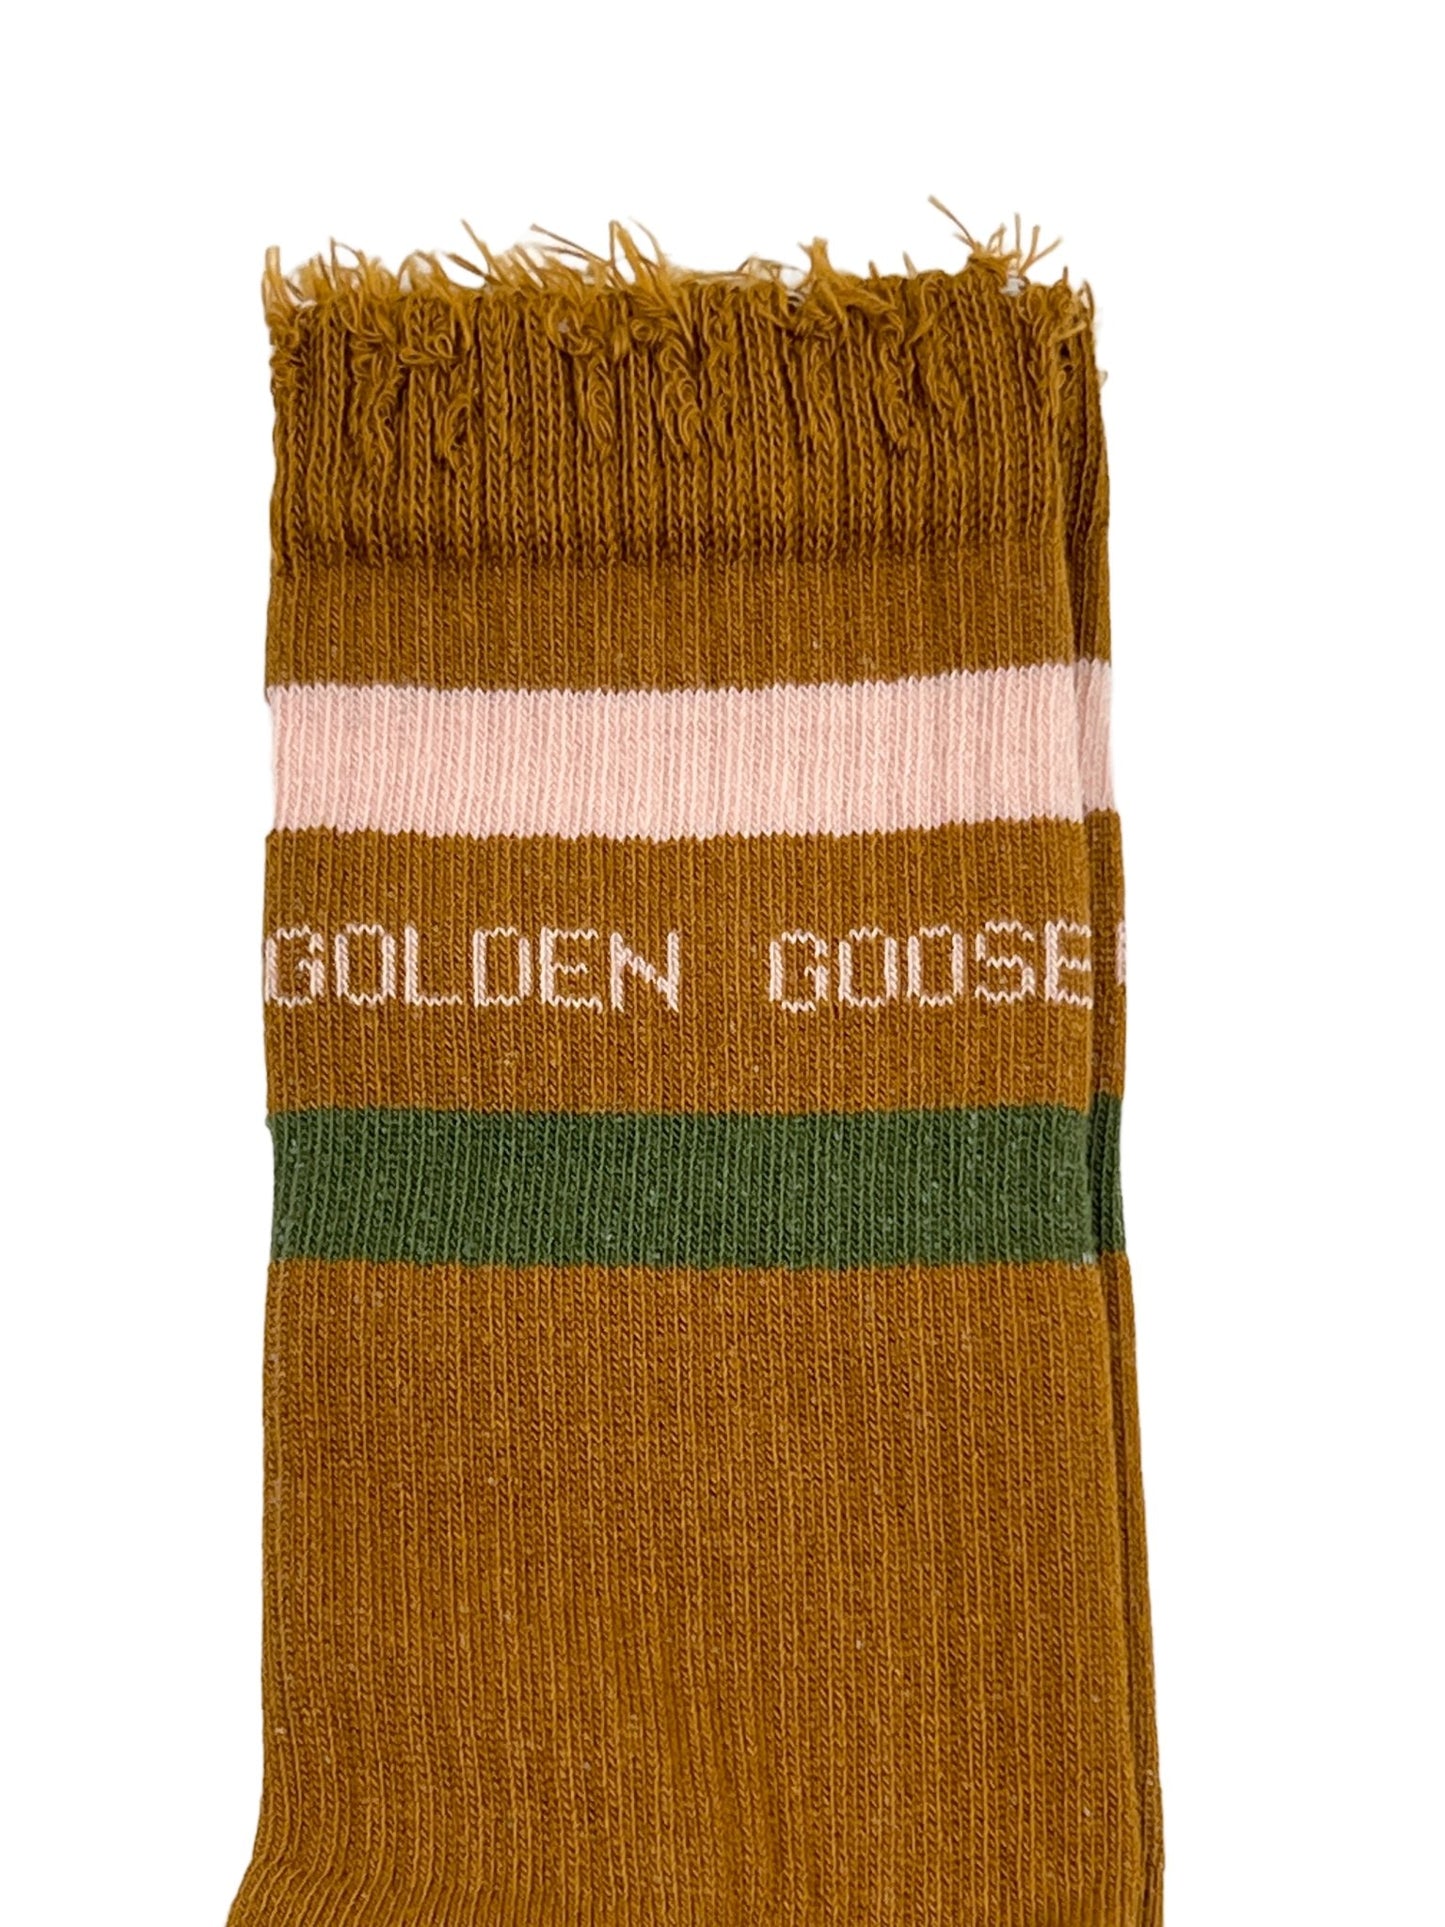 Probus GOLDEN GOOSE GUP00883 SOCKS HIGH RIB BROWN/GREEN/PINK M